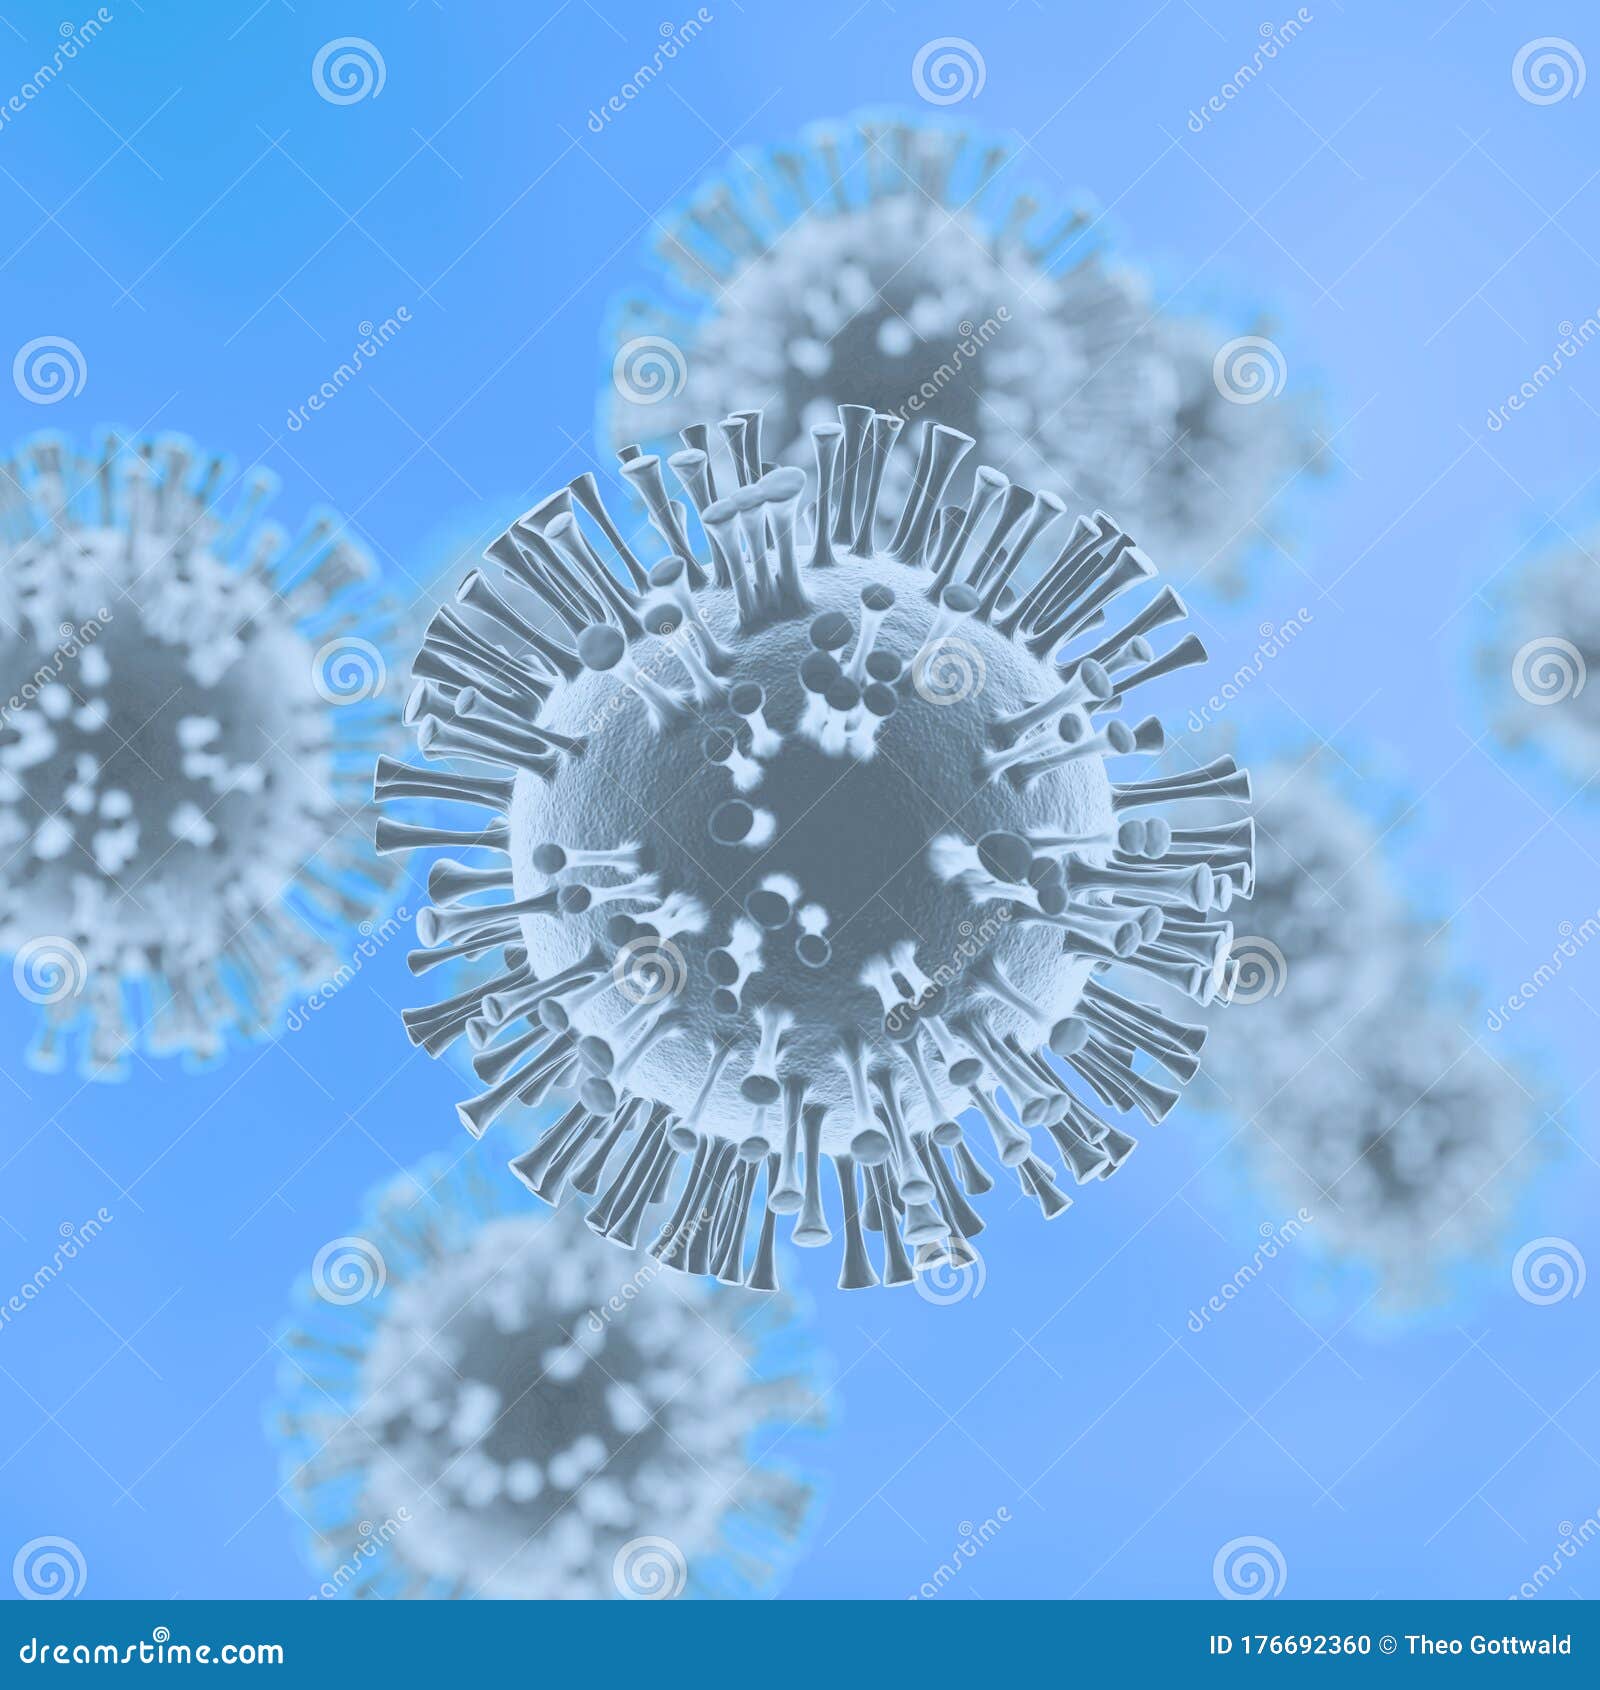 coronavirus closeup 